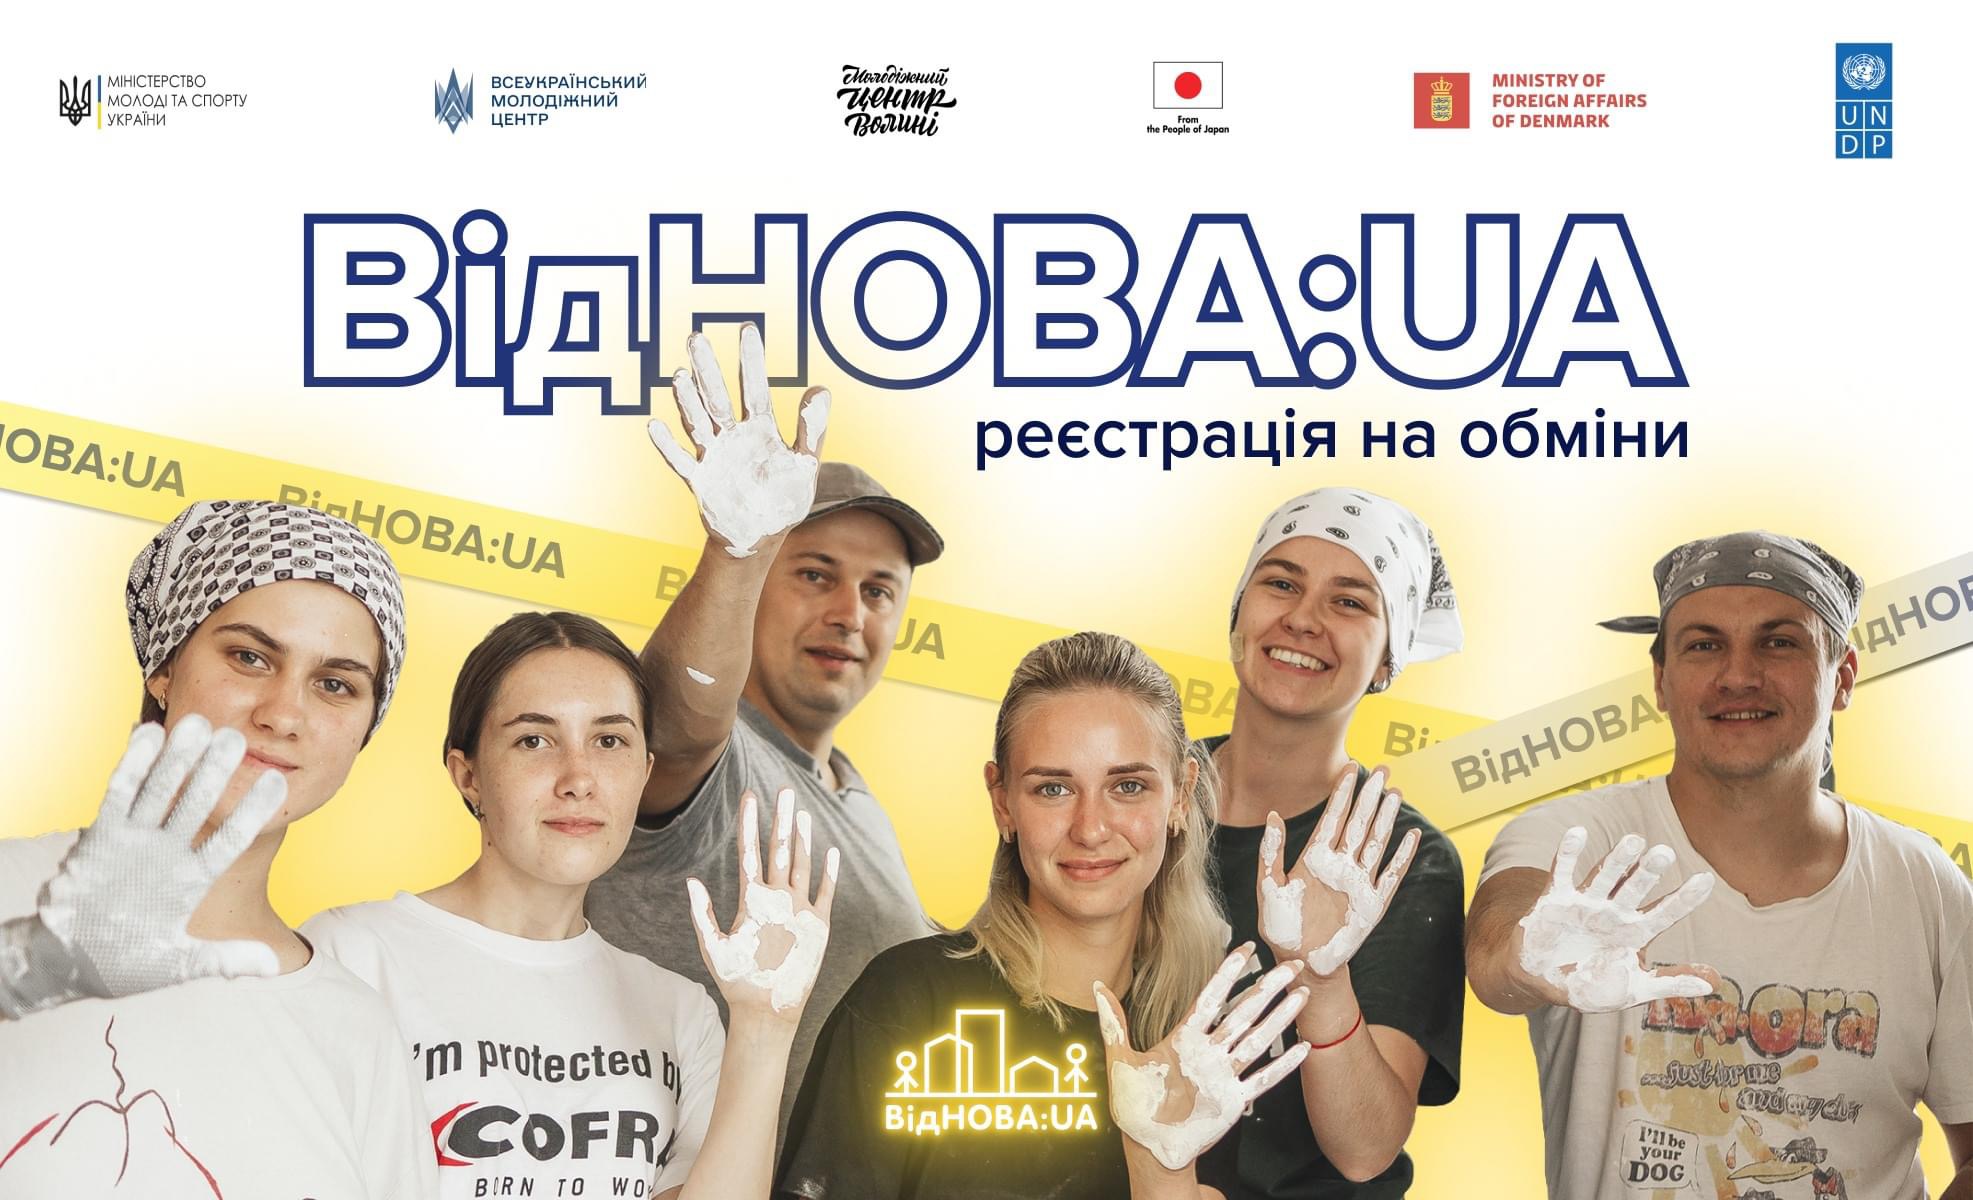 Реєстрацію на молодіжні обміни програми ВідНОВА:UA відкрито